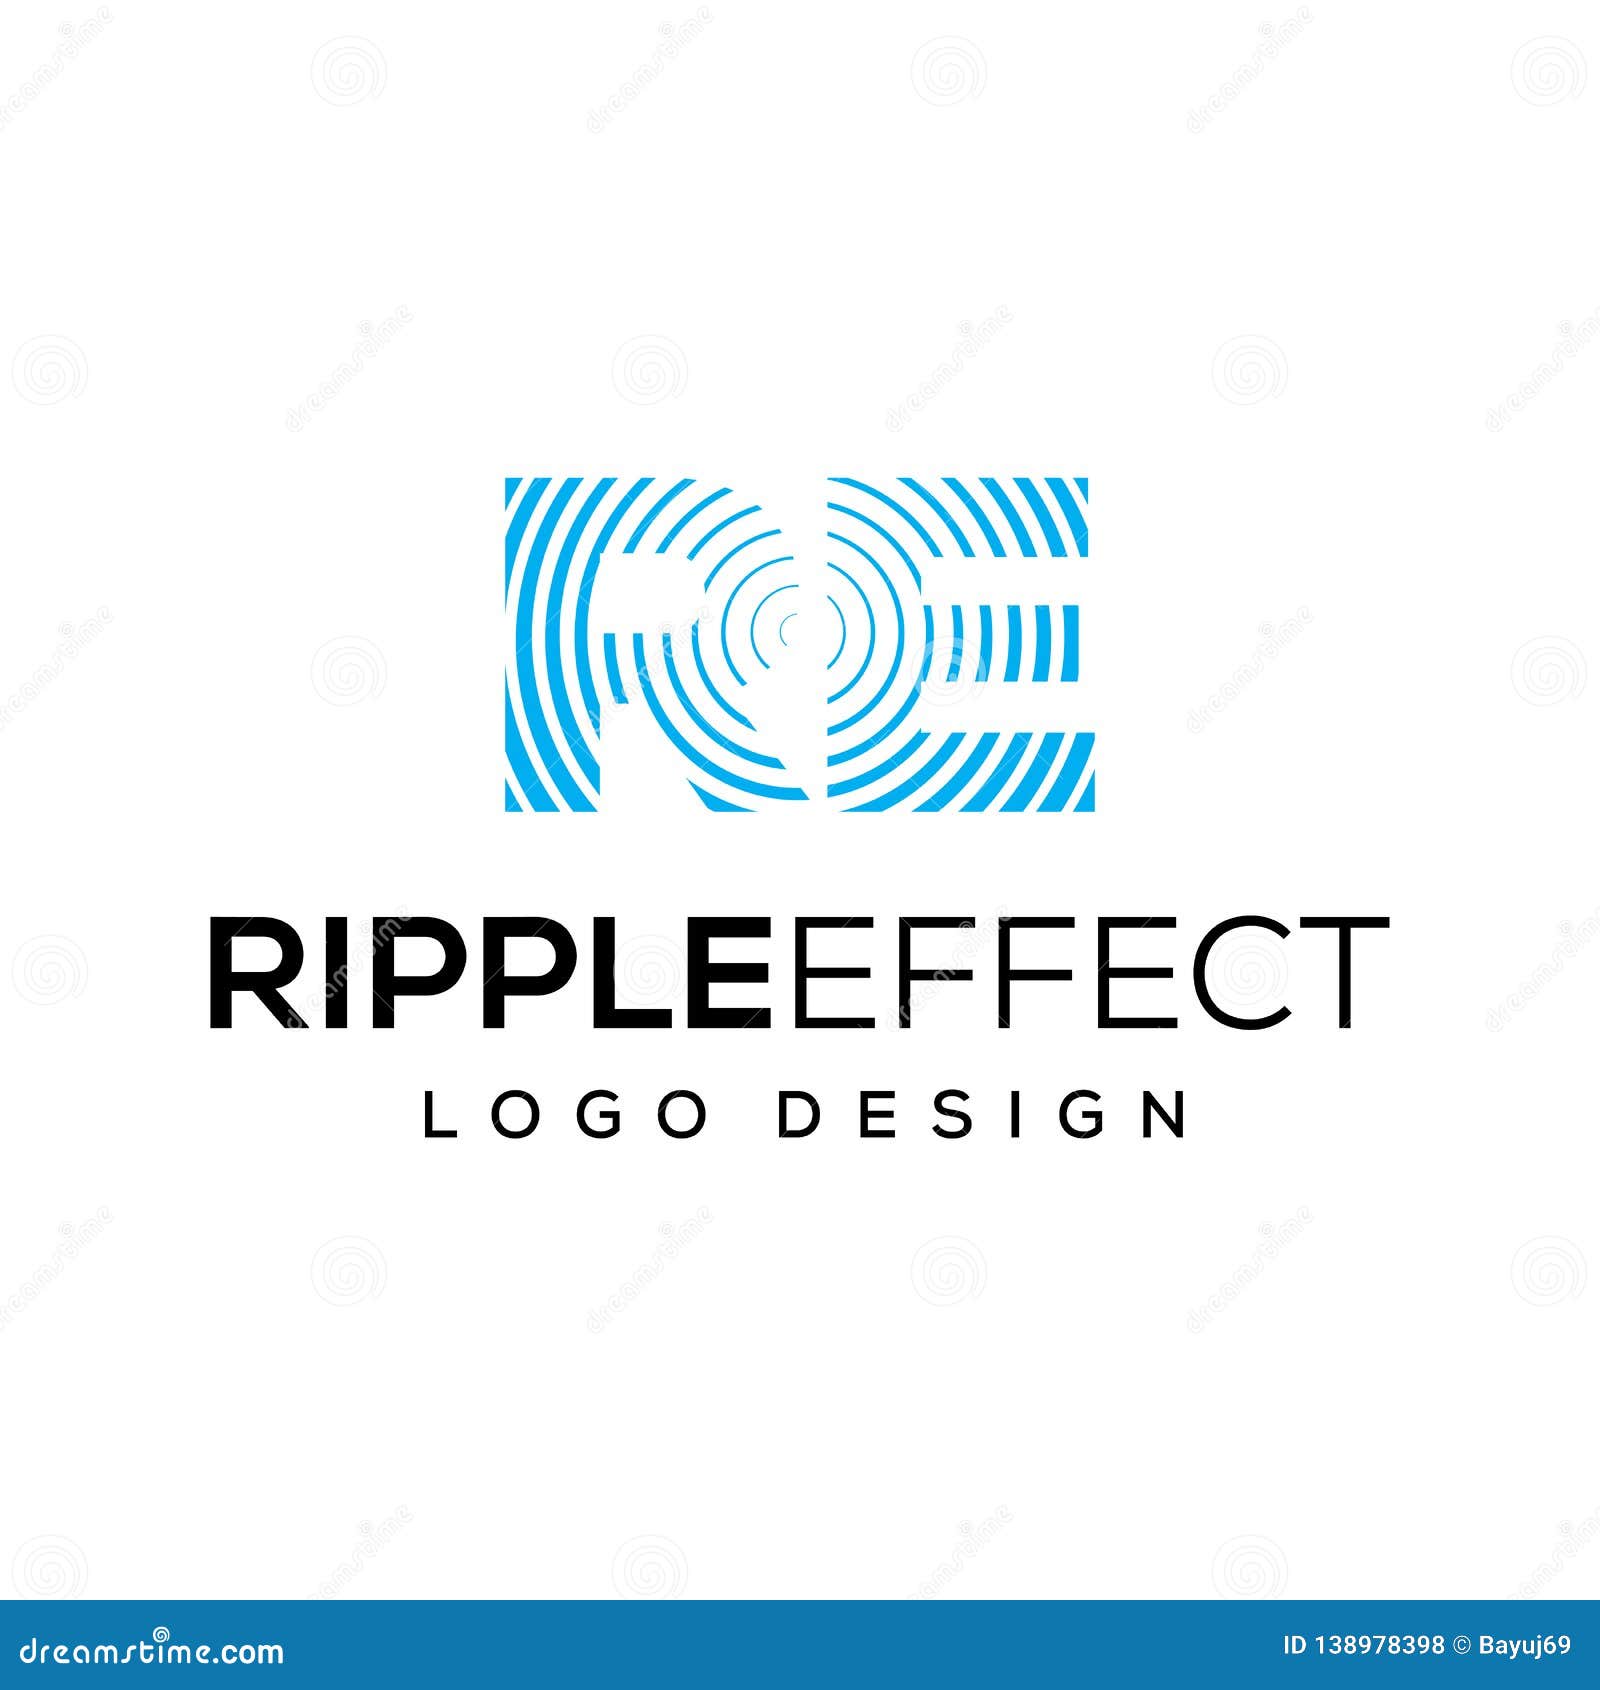 Ripple Effect Vector Logo Design Template Stock Vector